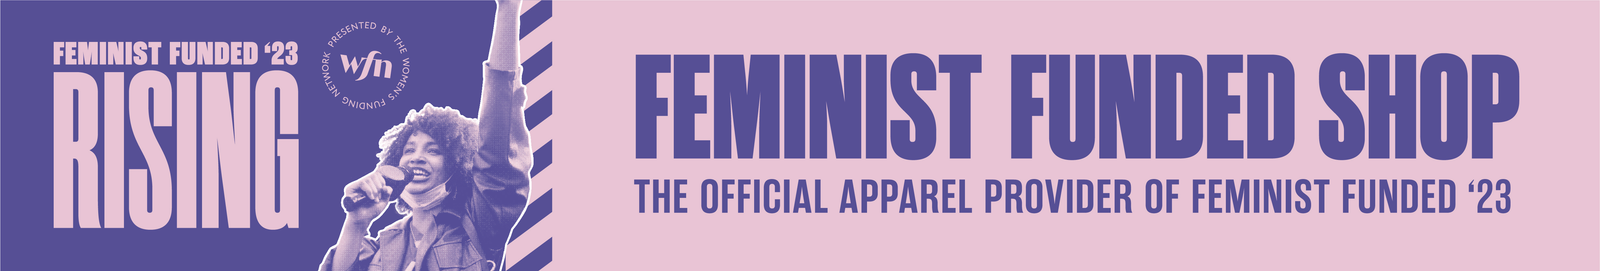 Feminist Funded '23